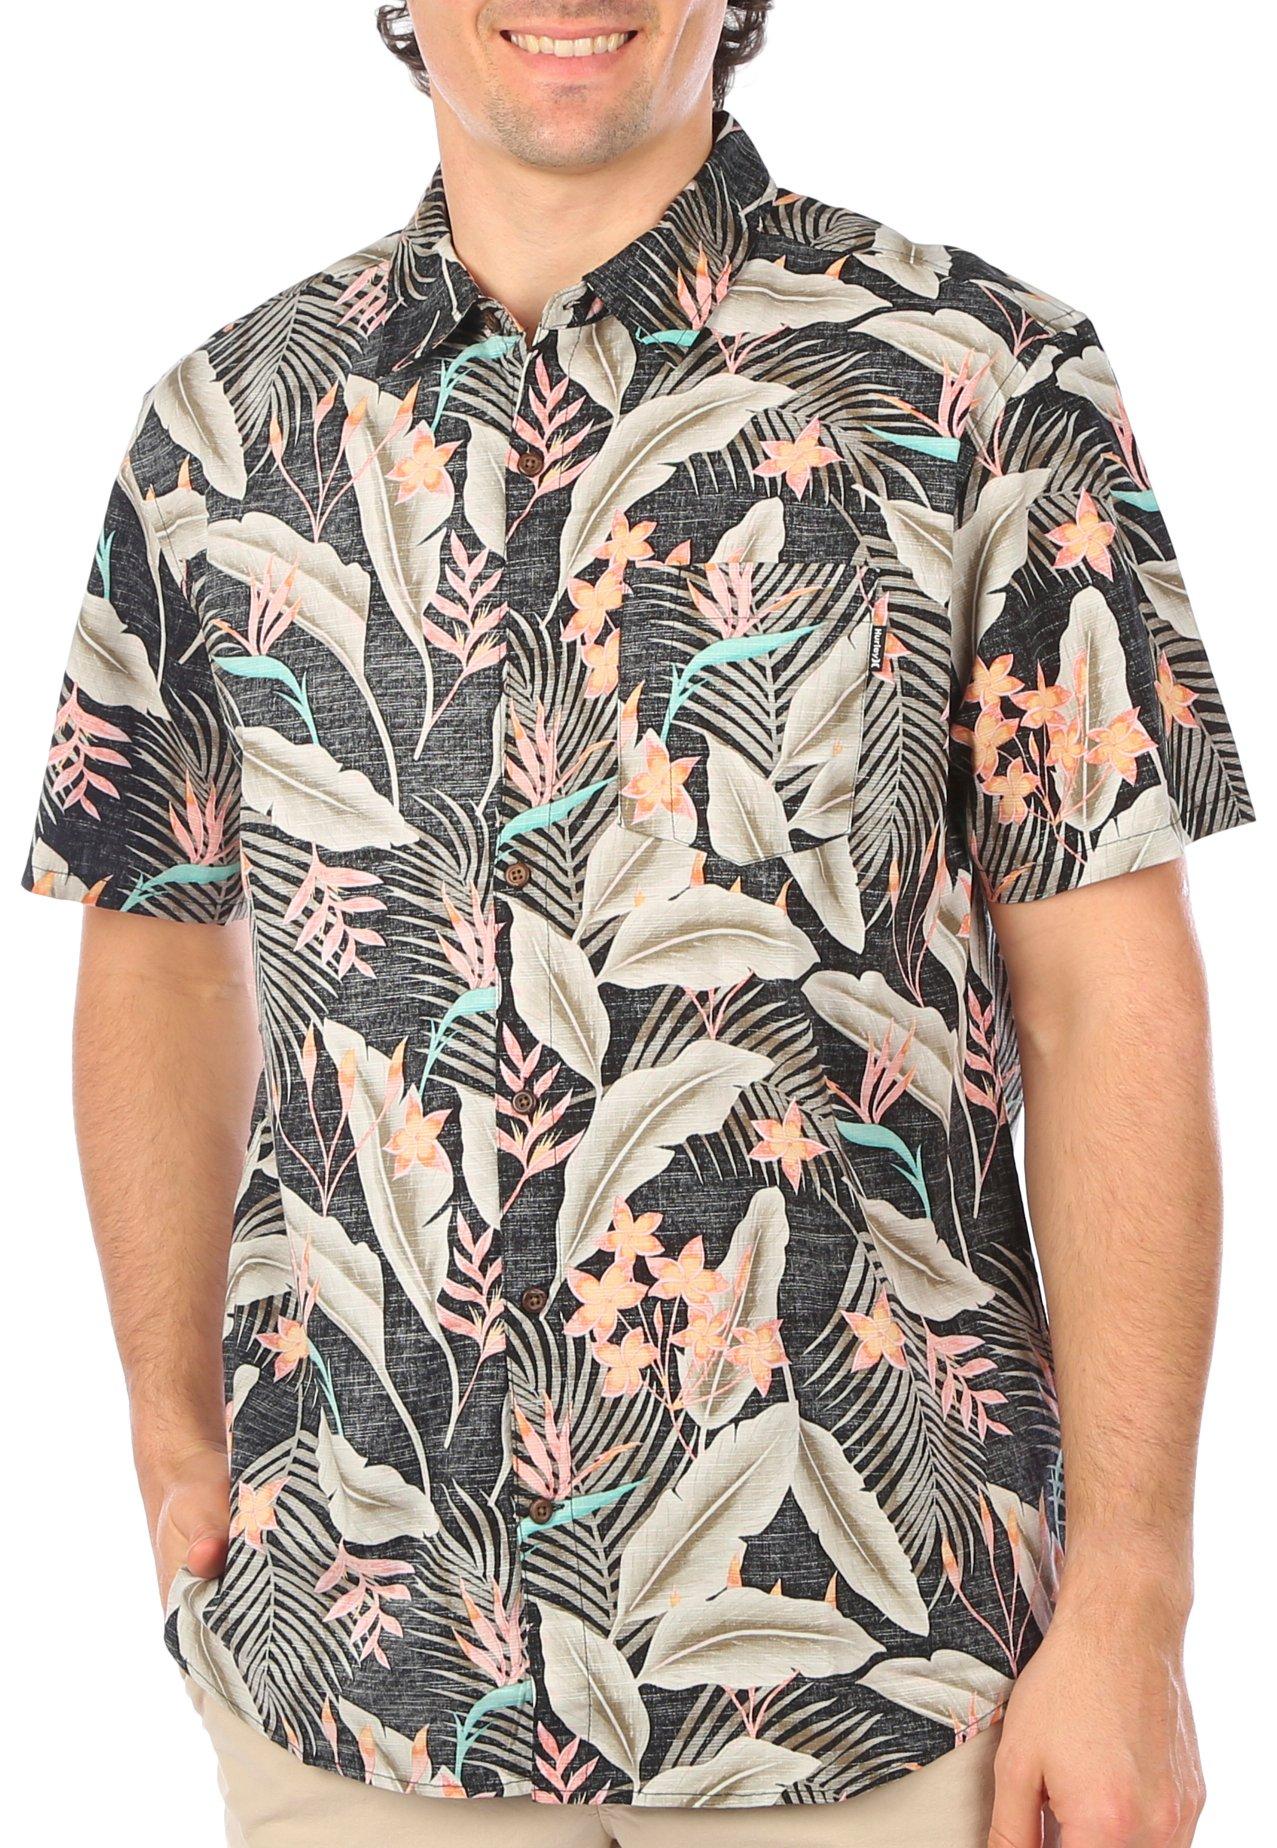 Mens Tropical Print Button Down Shirt Top